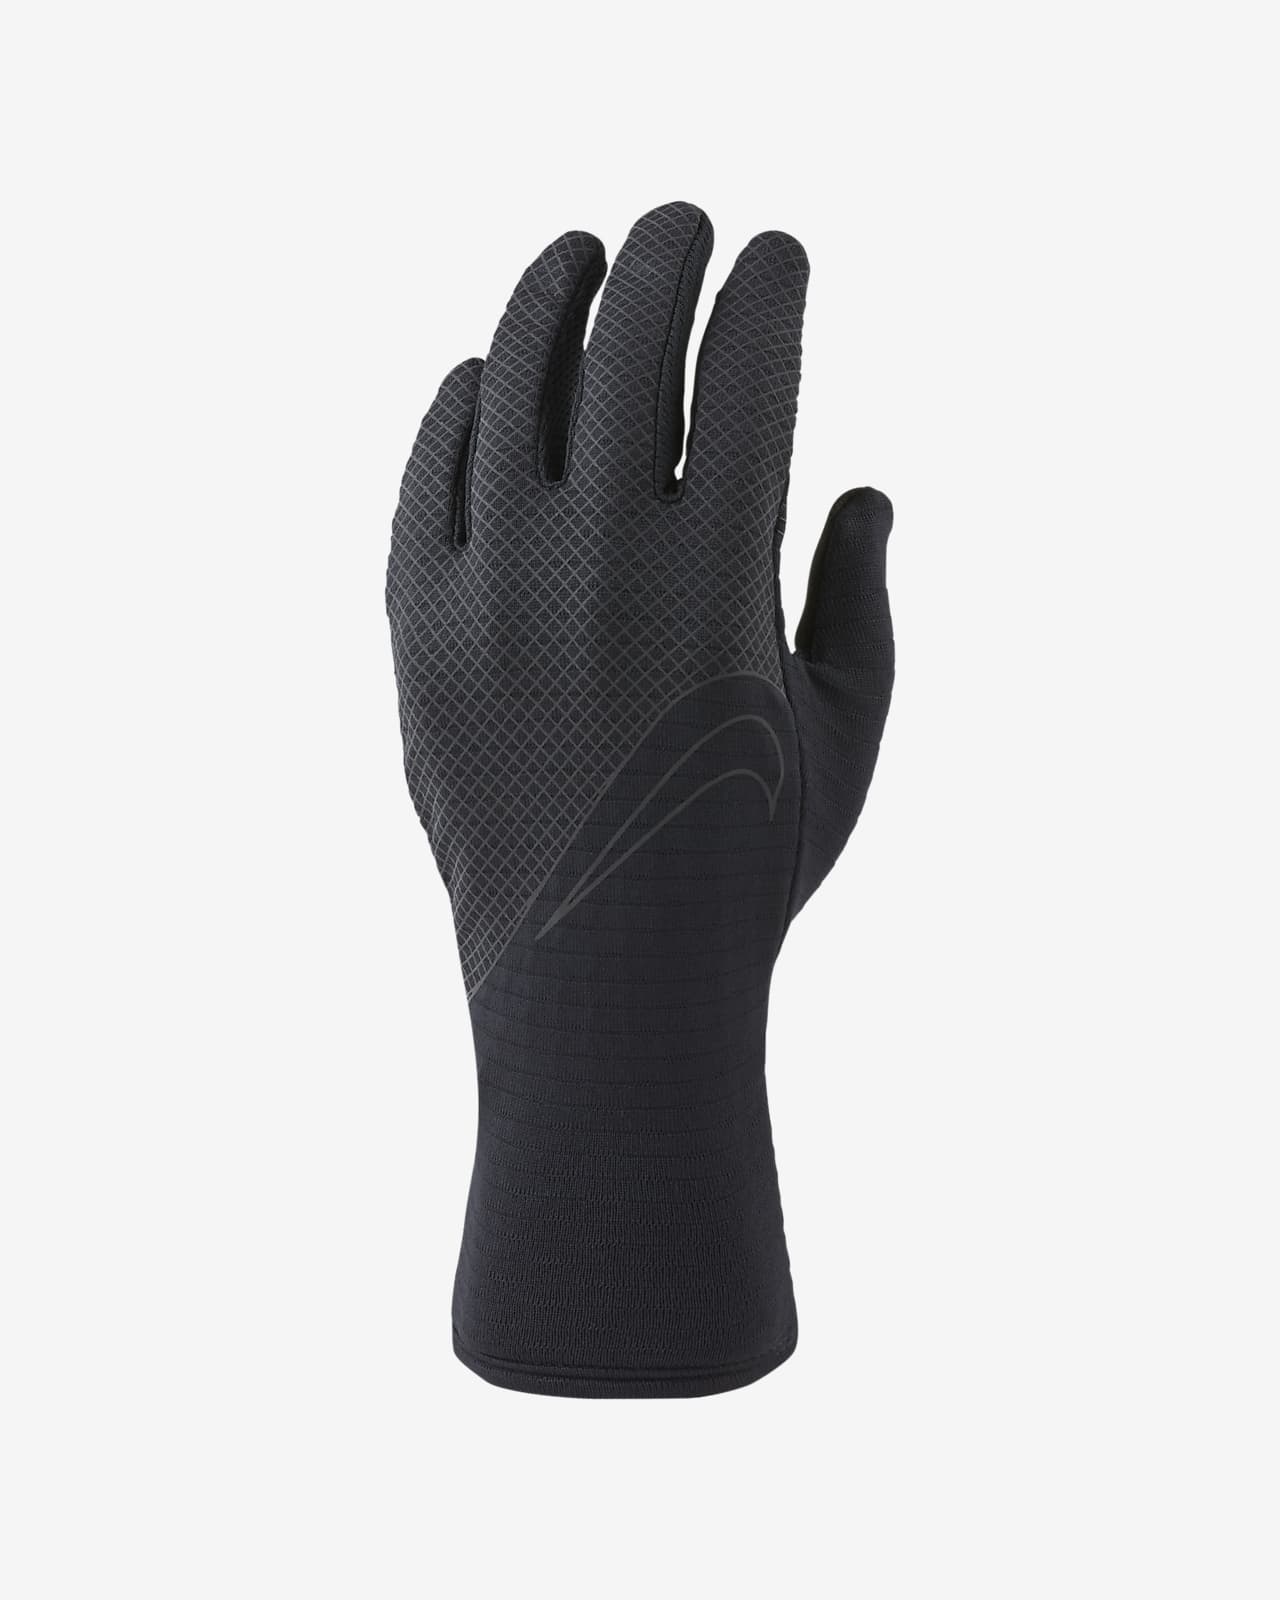 Nike Sphere 360 Women's Running Gloves